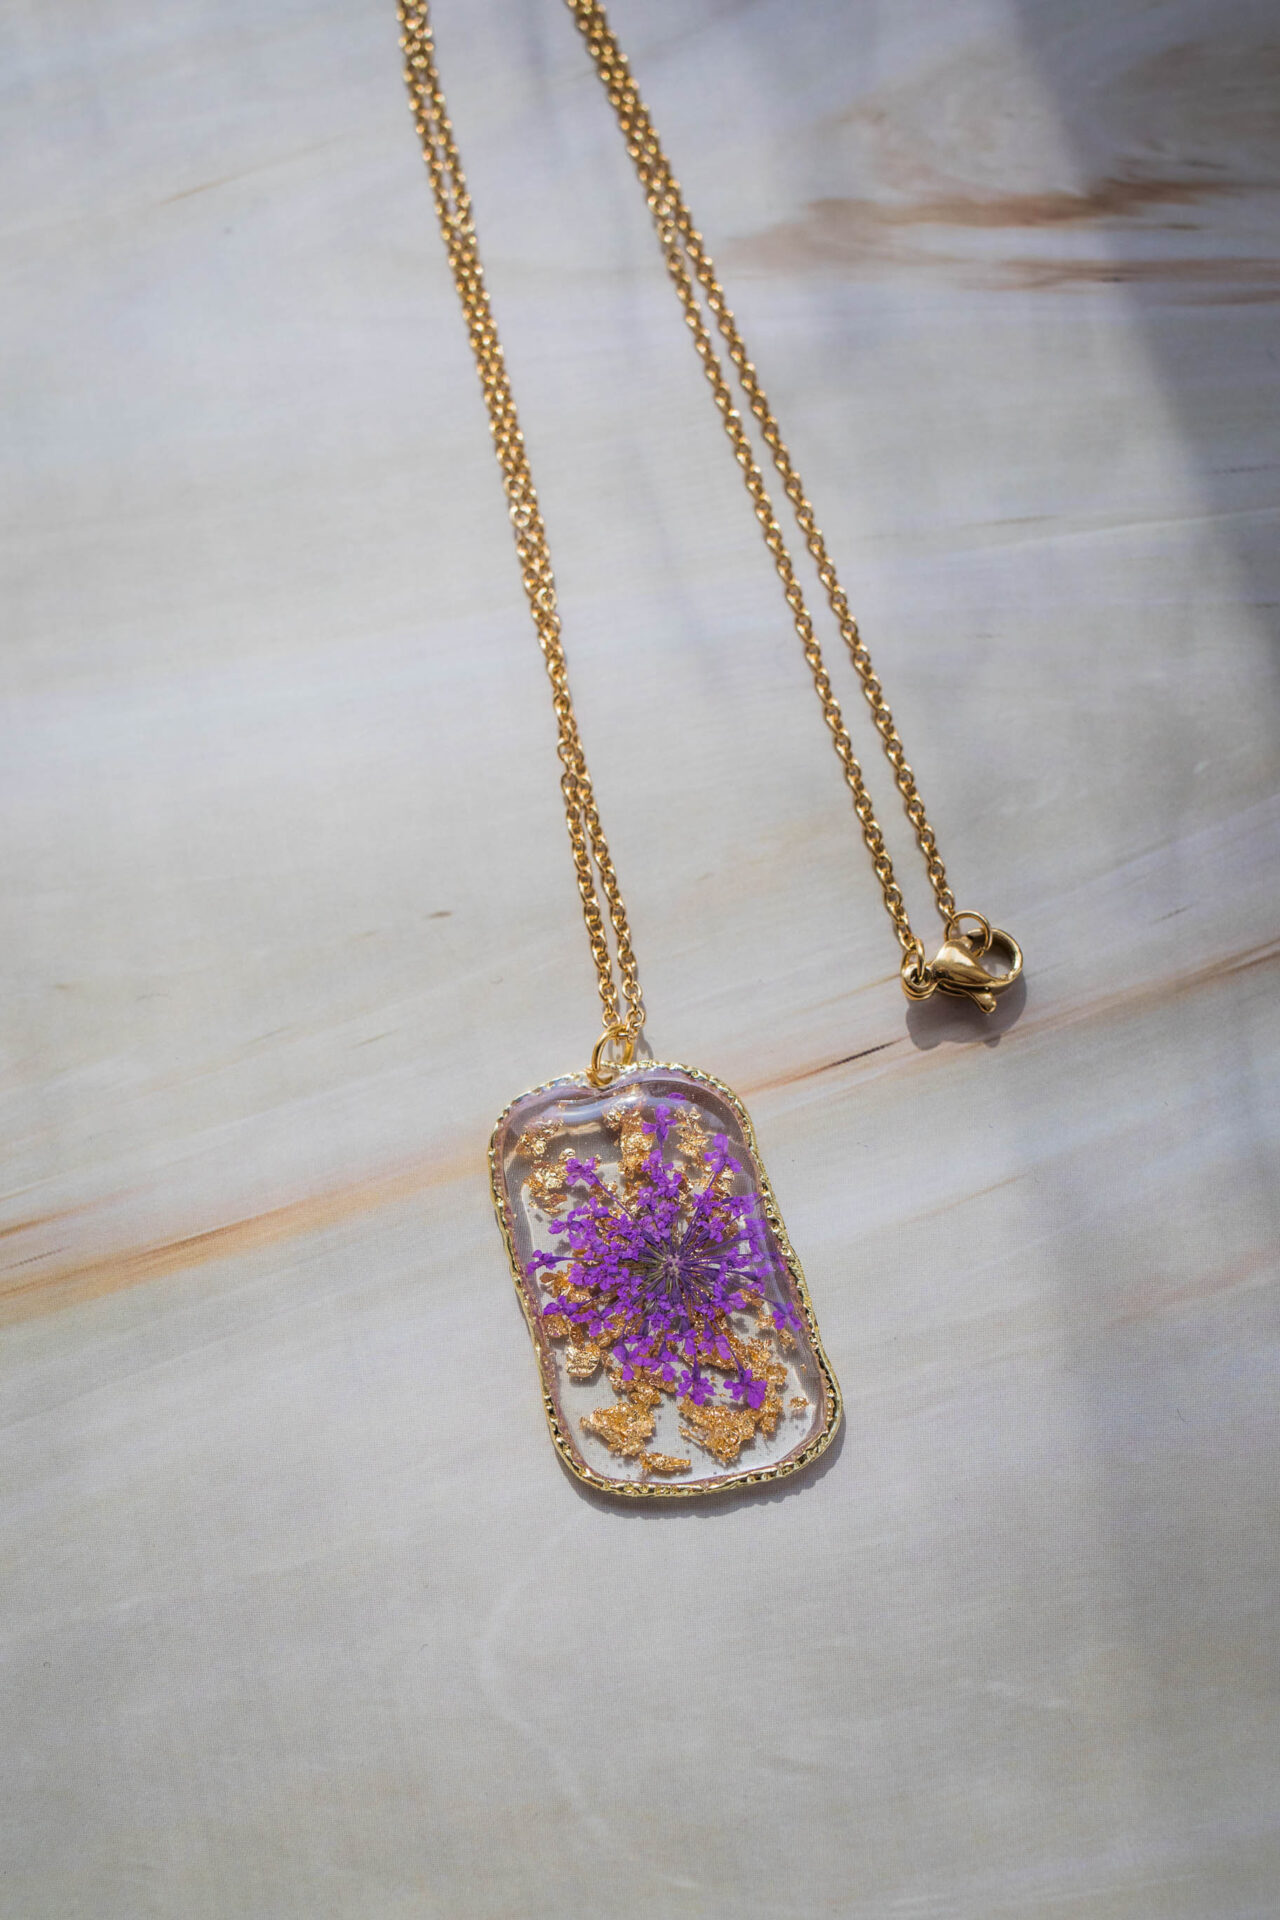 Bijoux collier pendentif fleur mauve et feuille or - boutique de créateur - France